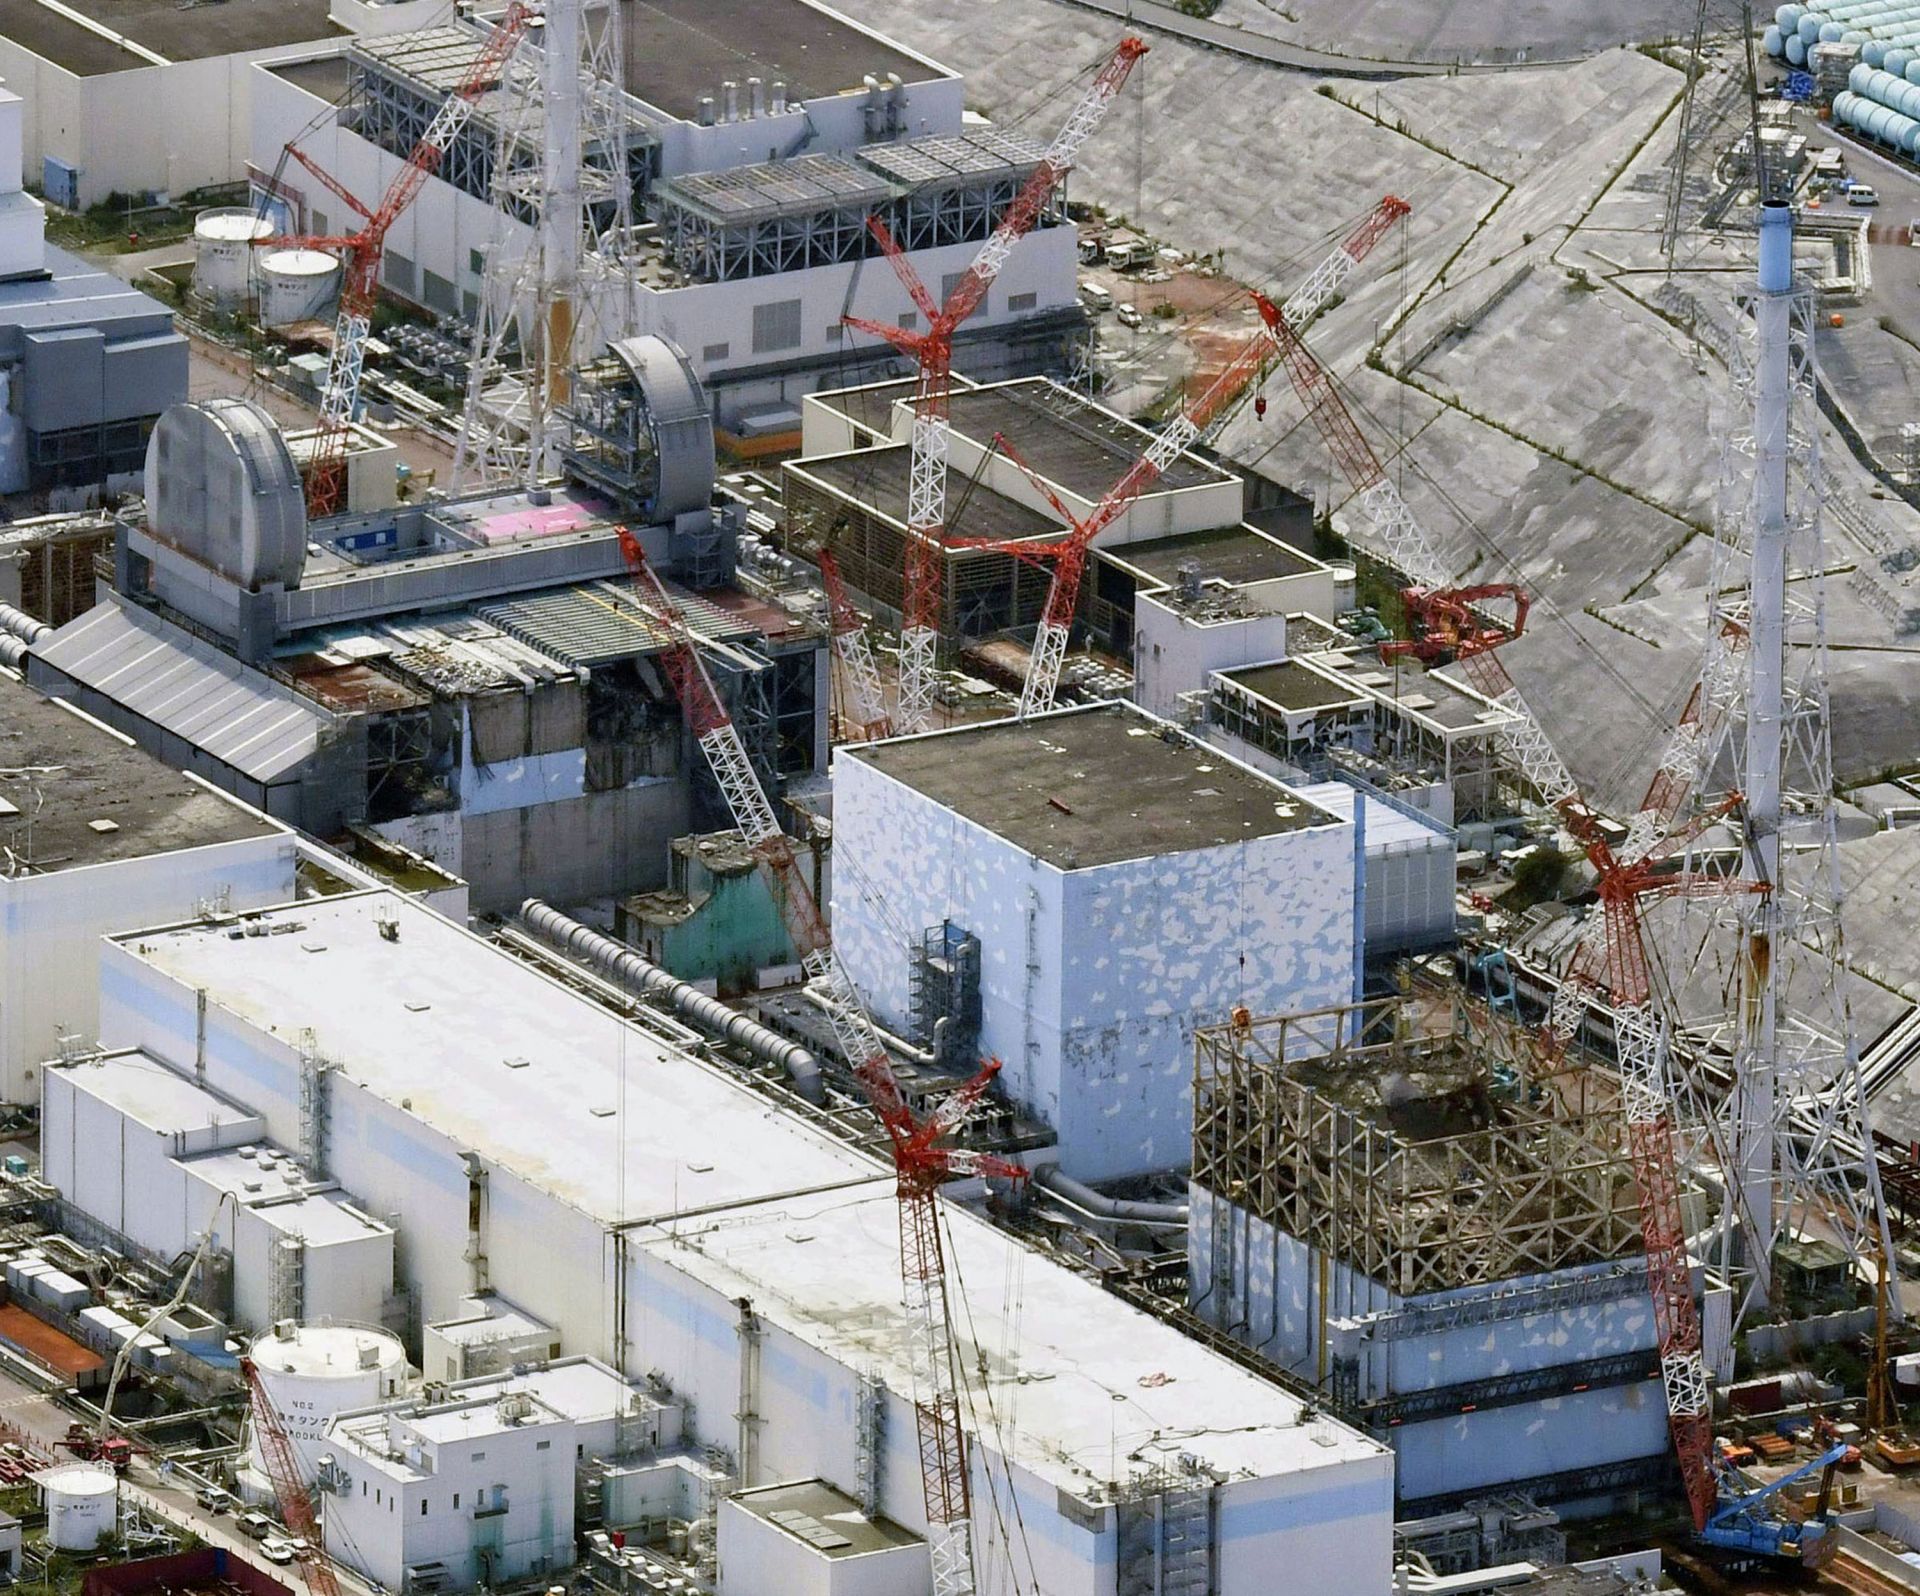 Снимка от 4 септември 2017 г. показва реакторите на атомната електроцентрала Фукушима - отдолу вдясно са трите блока 